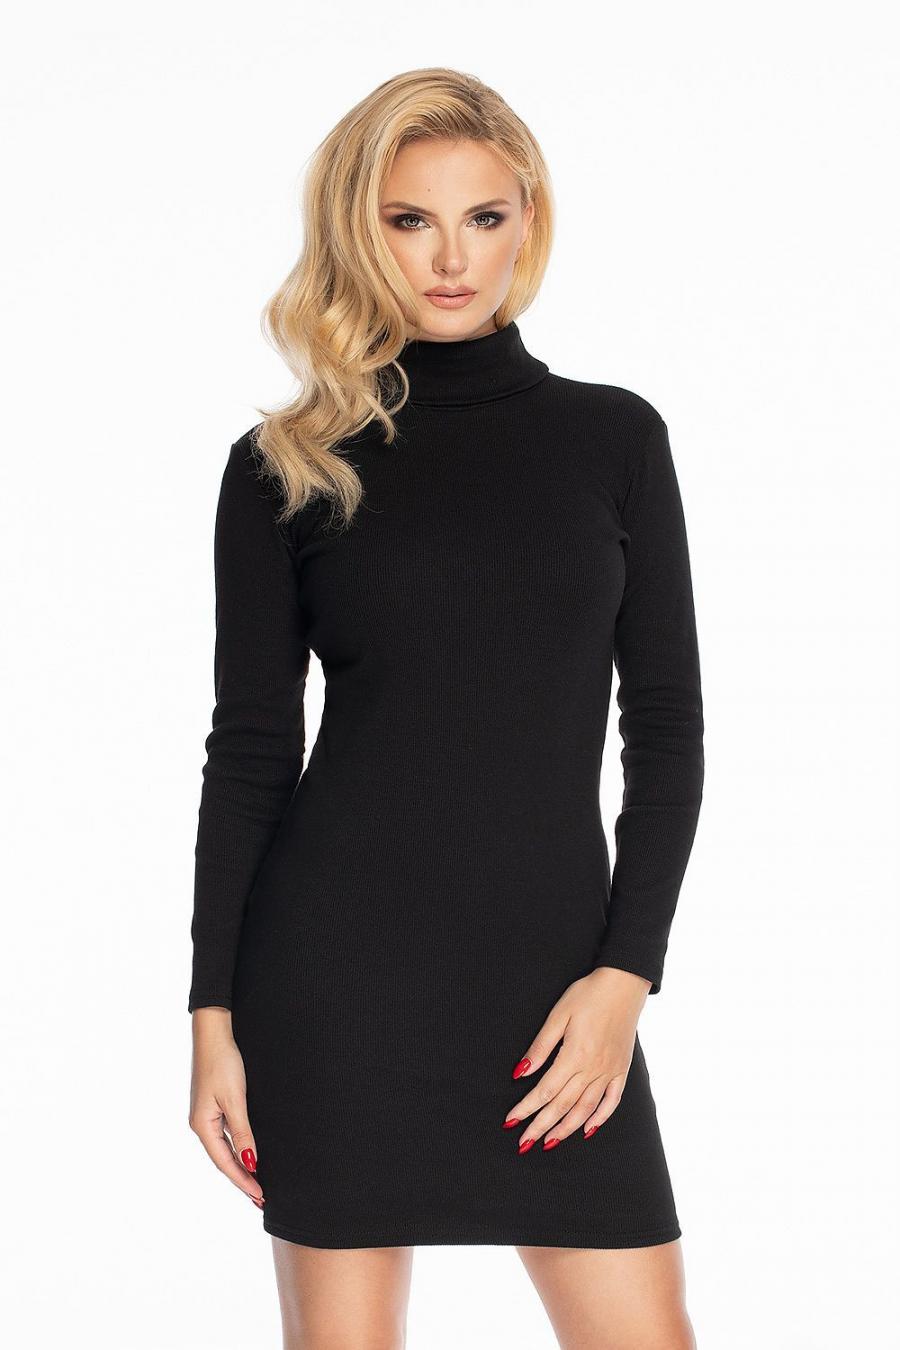 Ostatní značky šaty dámské svetrové PEKY 146934 - černá - velikost L//XL